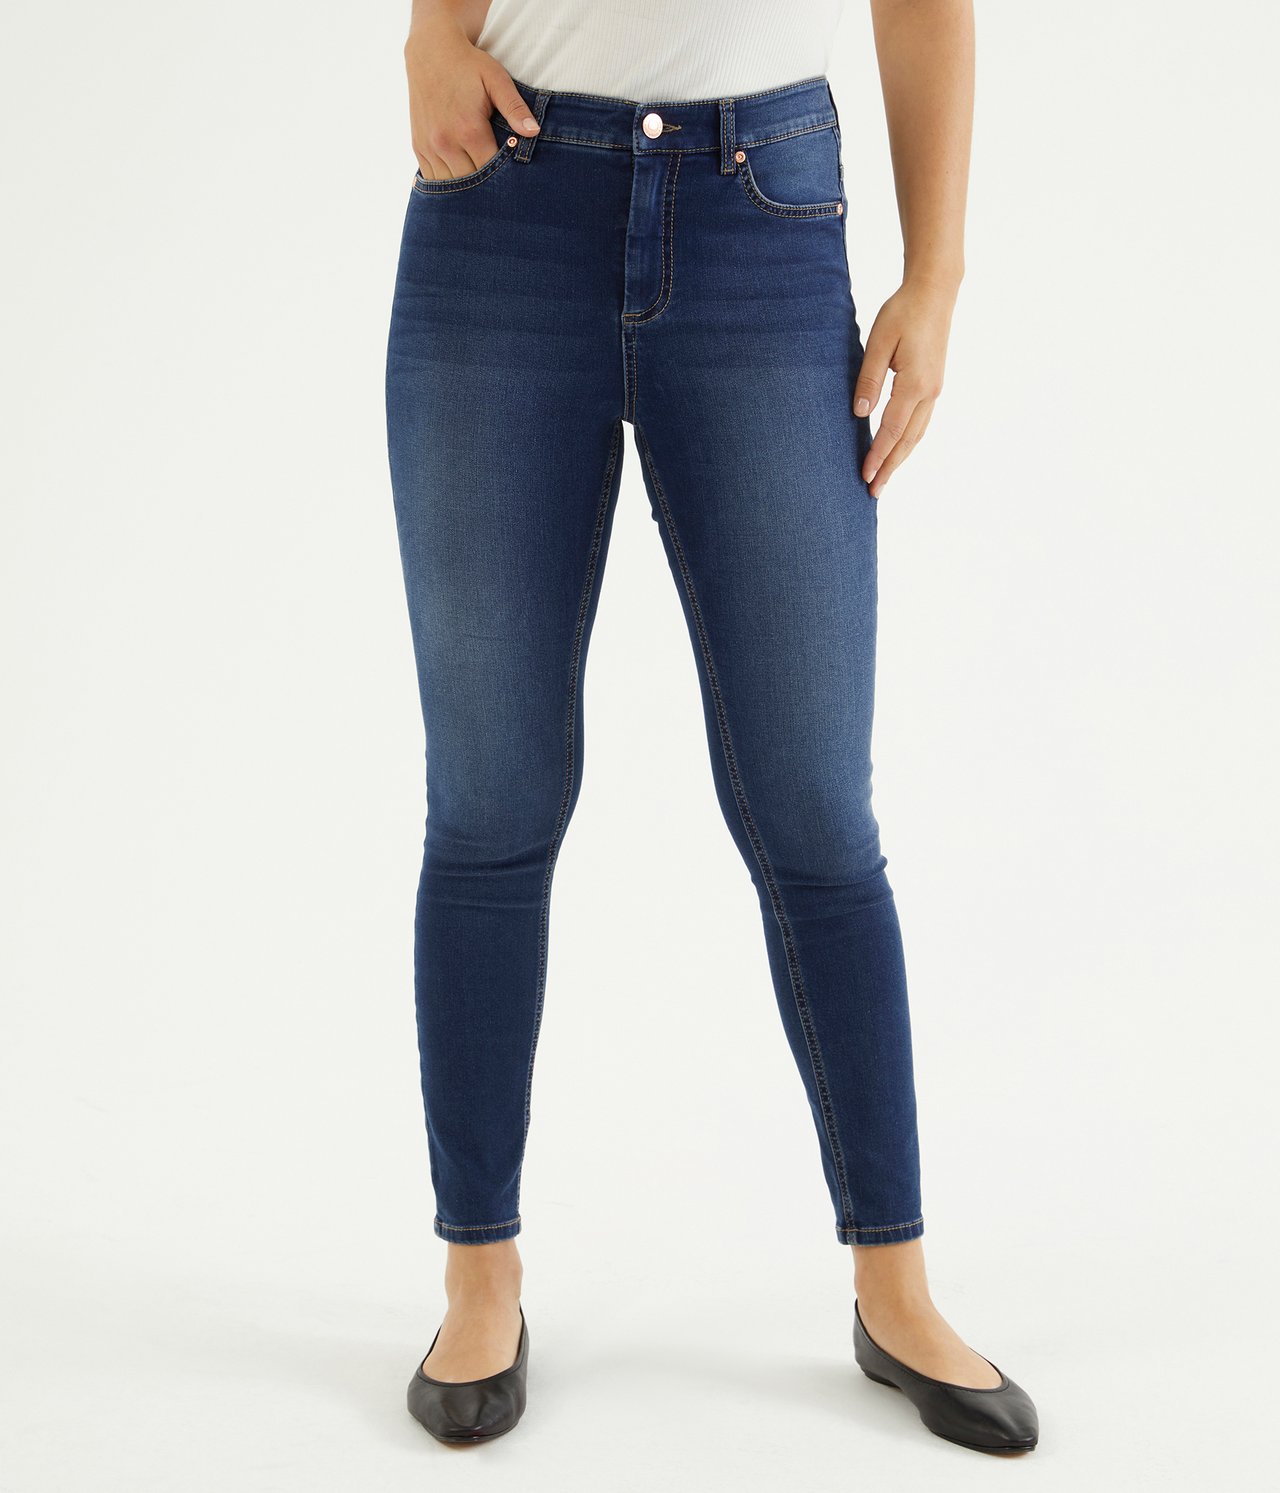 Super slim jeans short leg Mörk denim - null - 4